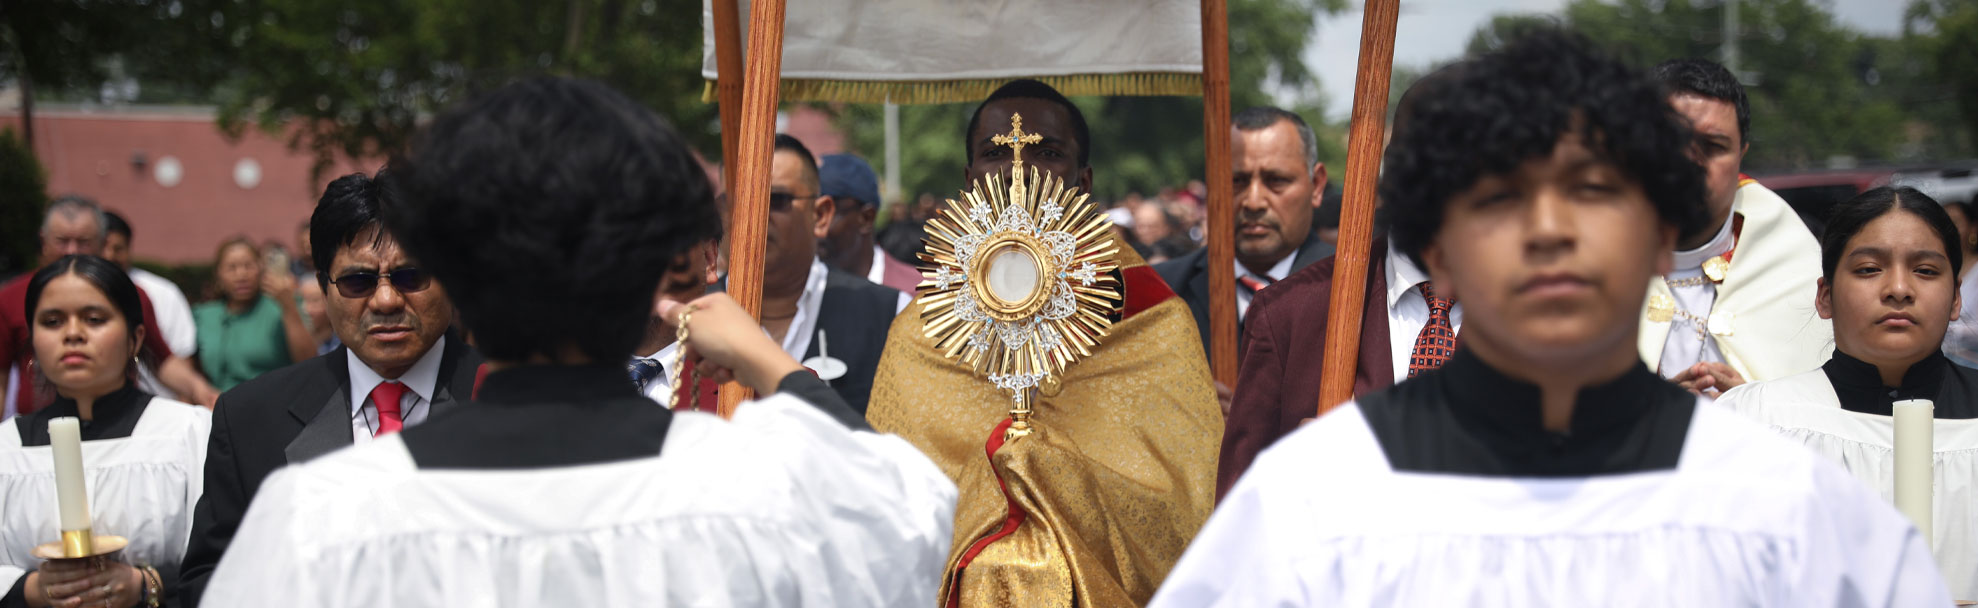 Eucharist-Procession